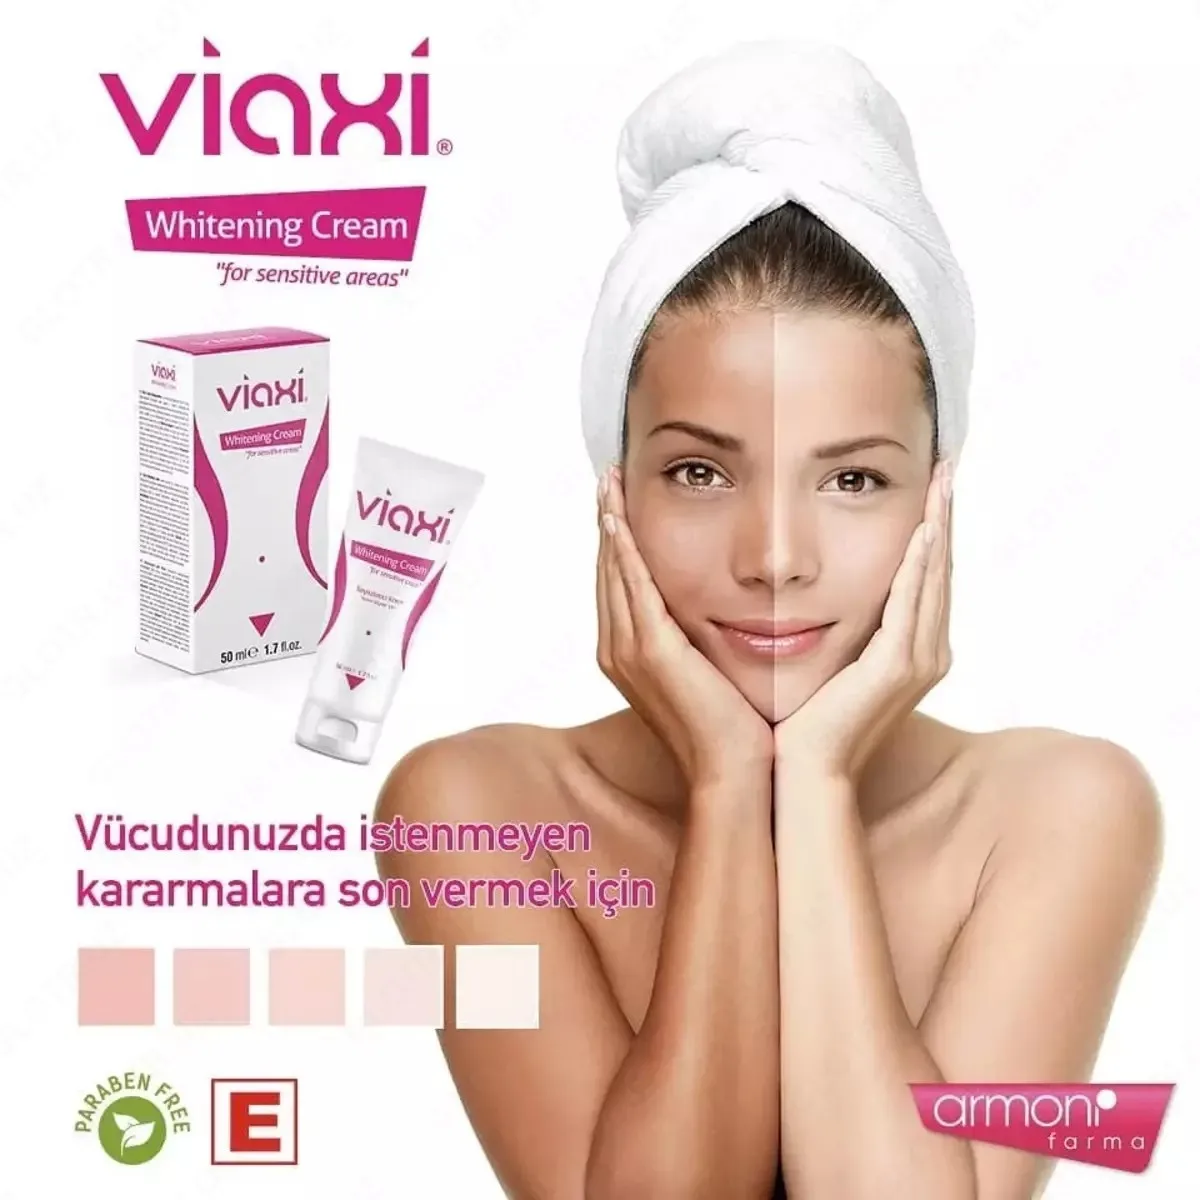 Отбеливающий крем для интимных зон Viaxi whitening cream#1